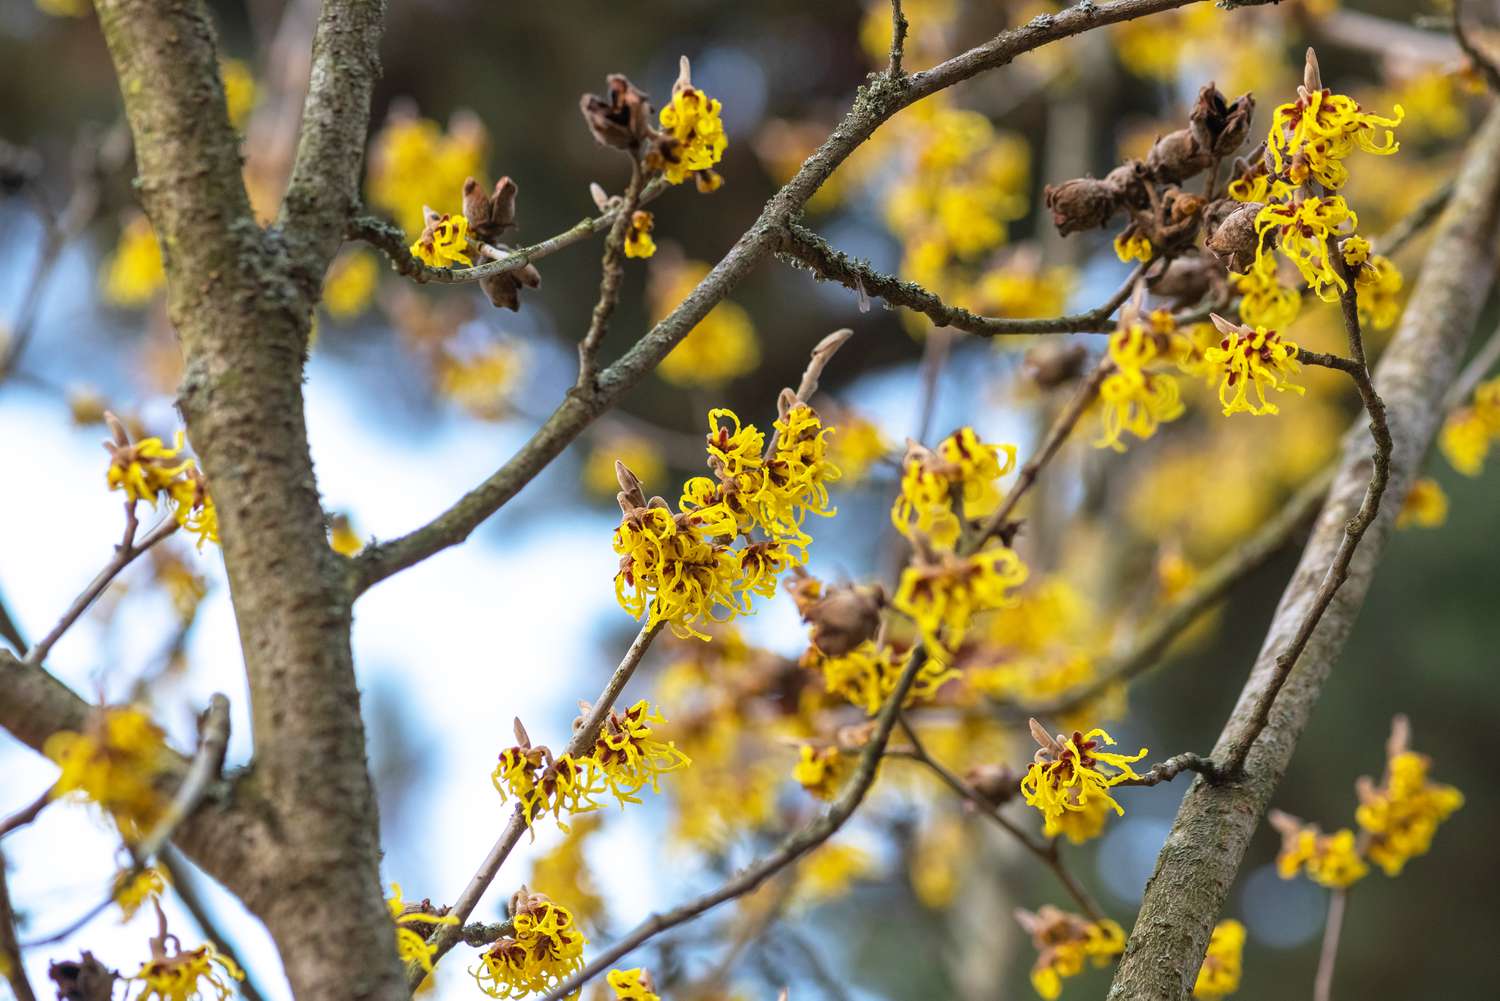 Zaubernussstrauch mit spinnenartigen gelben Blüten an den Zweigen